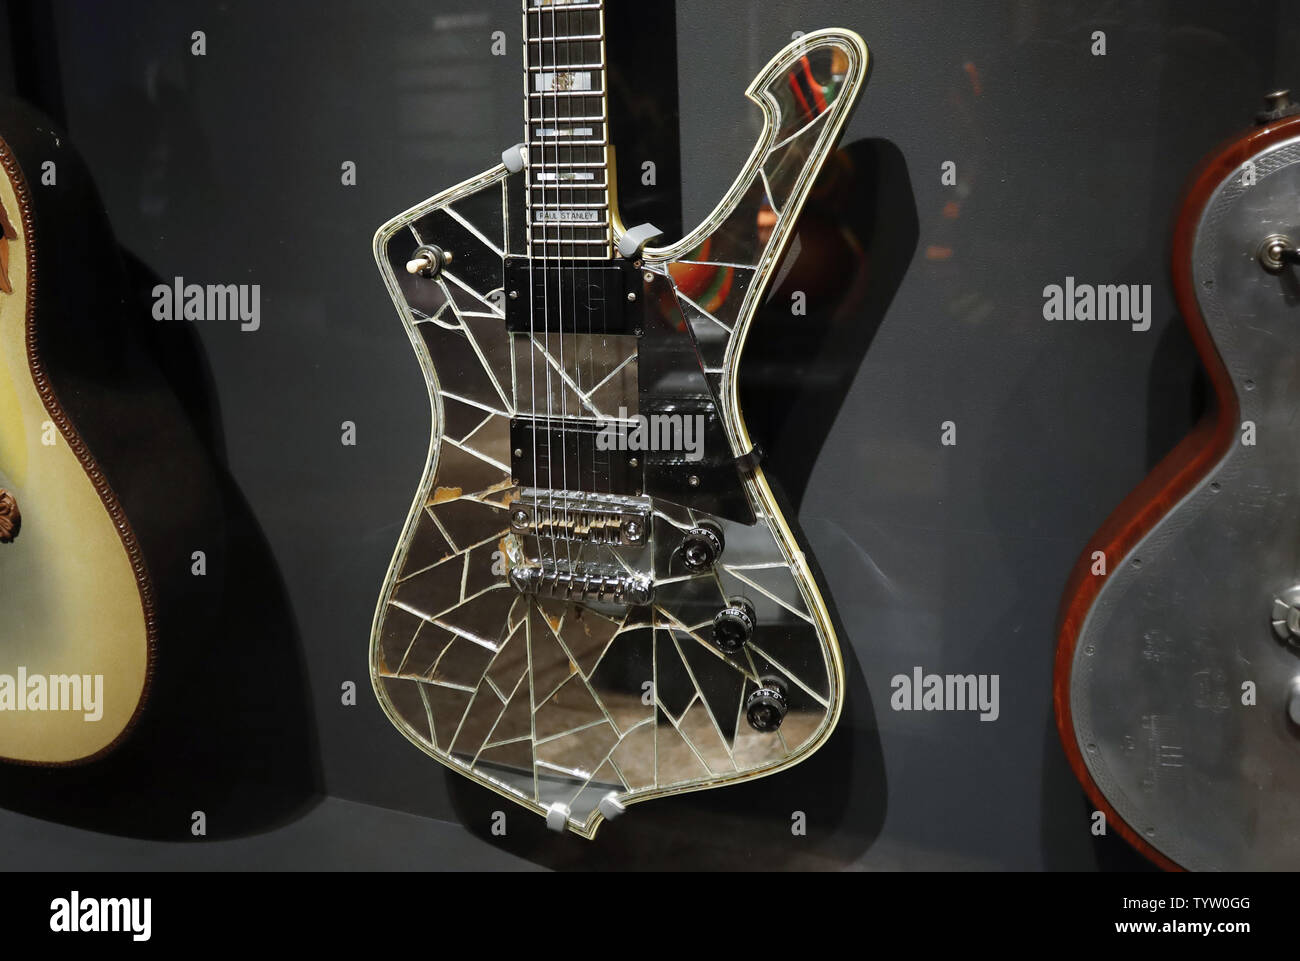 L'Ibanez specchio rotto la chitarra da Paul Stanley dei Kiss è sul display  a premere Anteprima per riprodurre a tutto volume: Strumenti di Rock & Roll  al Metropolitan Museum of Art il